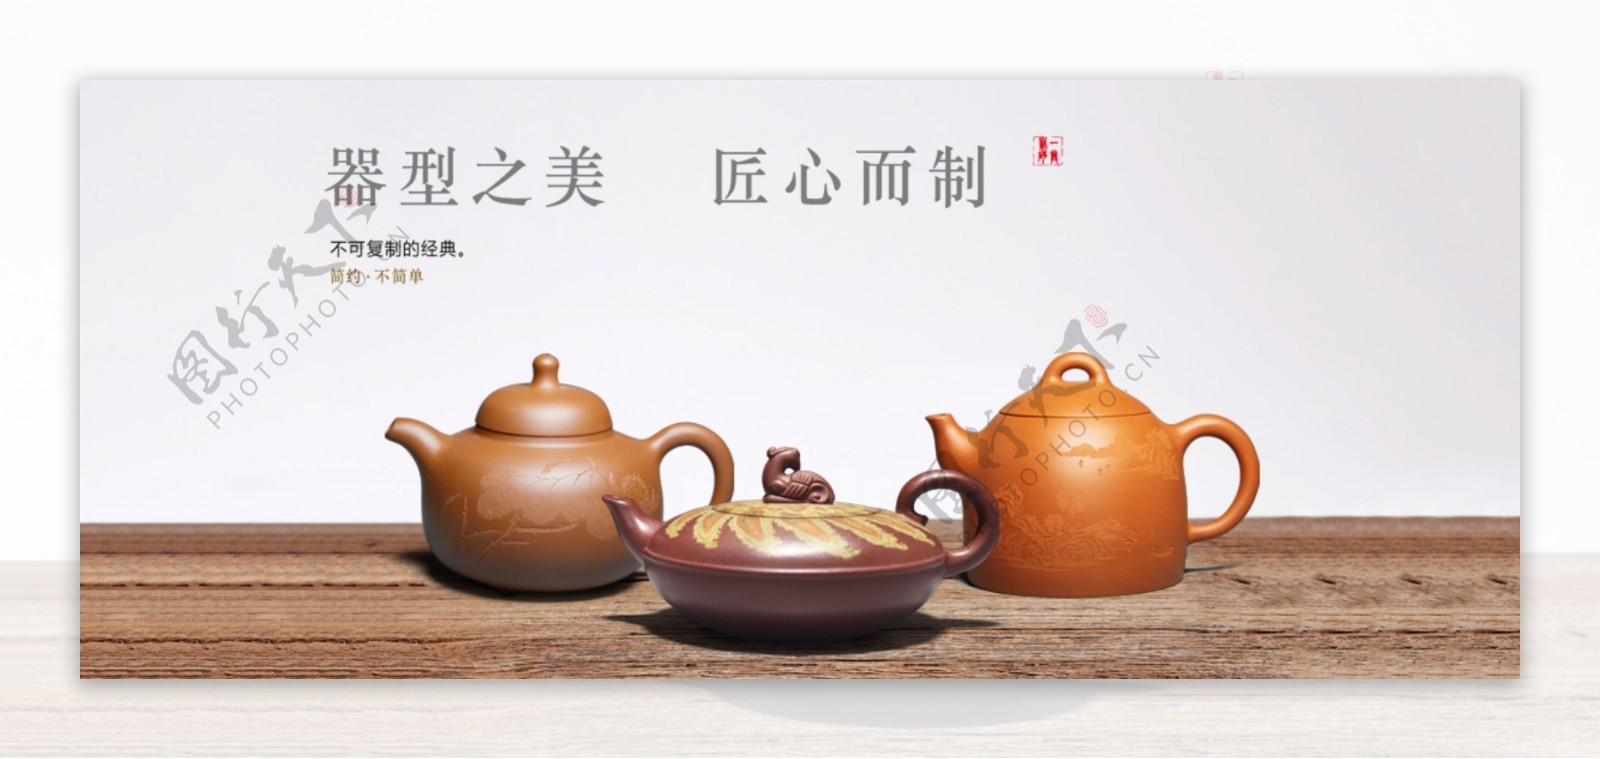 茶壶海报素材